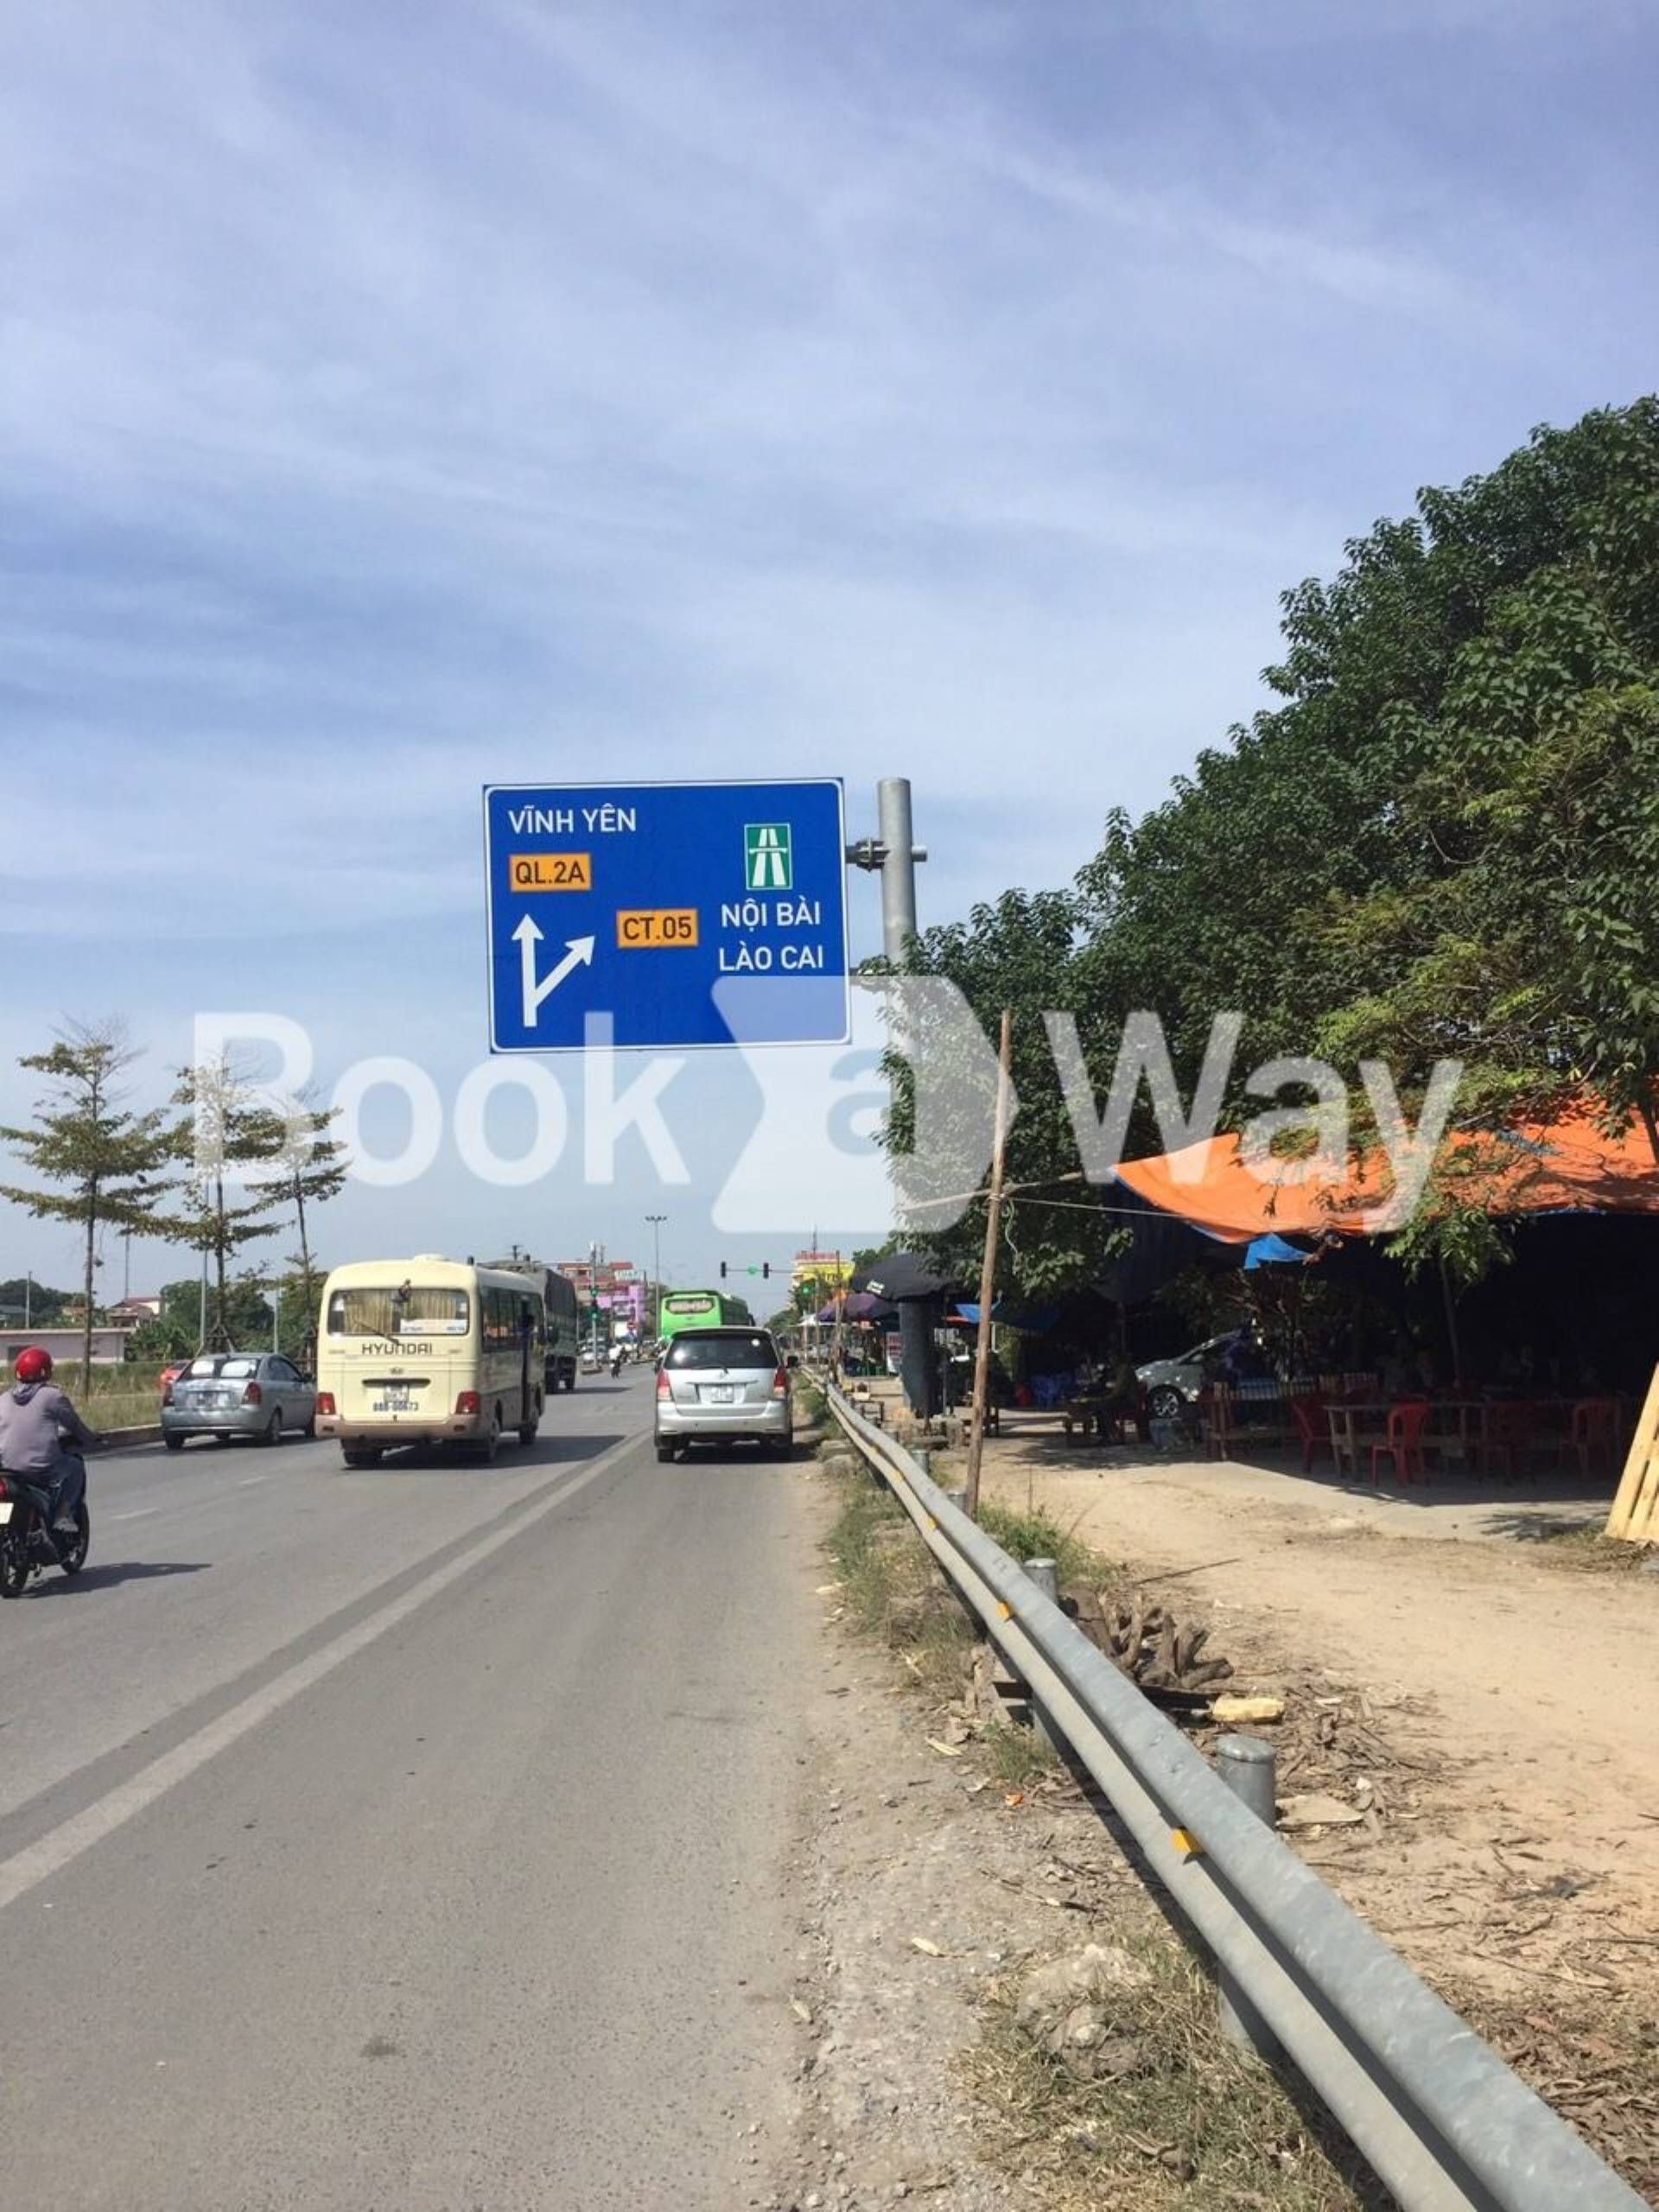 Sao Viet bus stop (near Hanoi Airport)